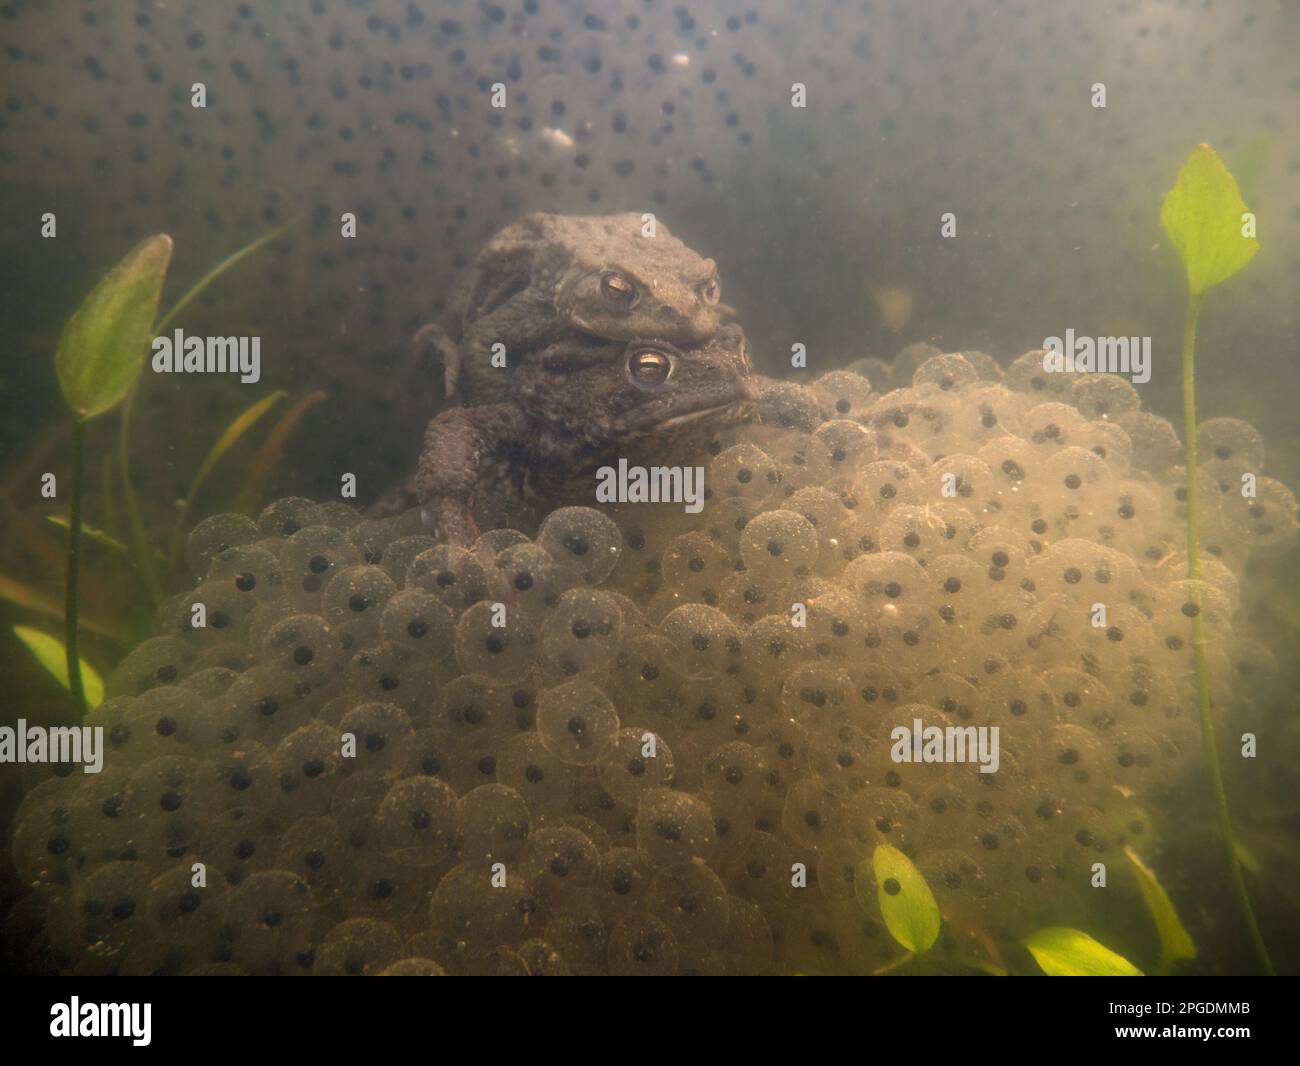 Mitten in der Froschbrut... Gemeine Kröte ( Bufo bufo ), Unterwasserfoto aus dem häuslichen Teich, Gemeine Kröte paart sich Stockfoto